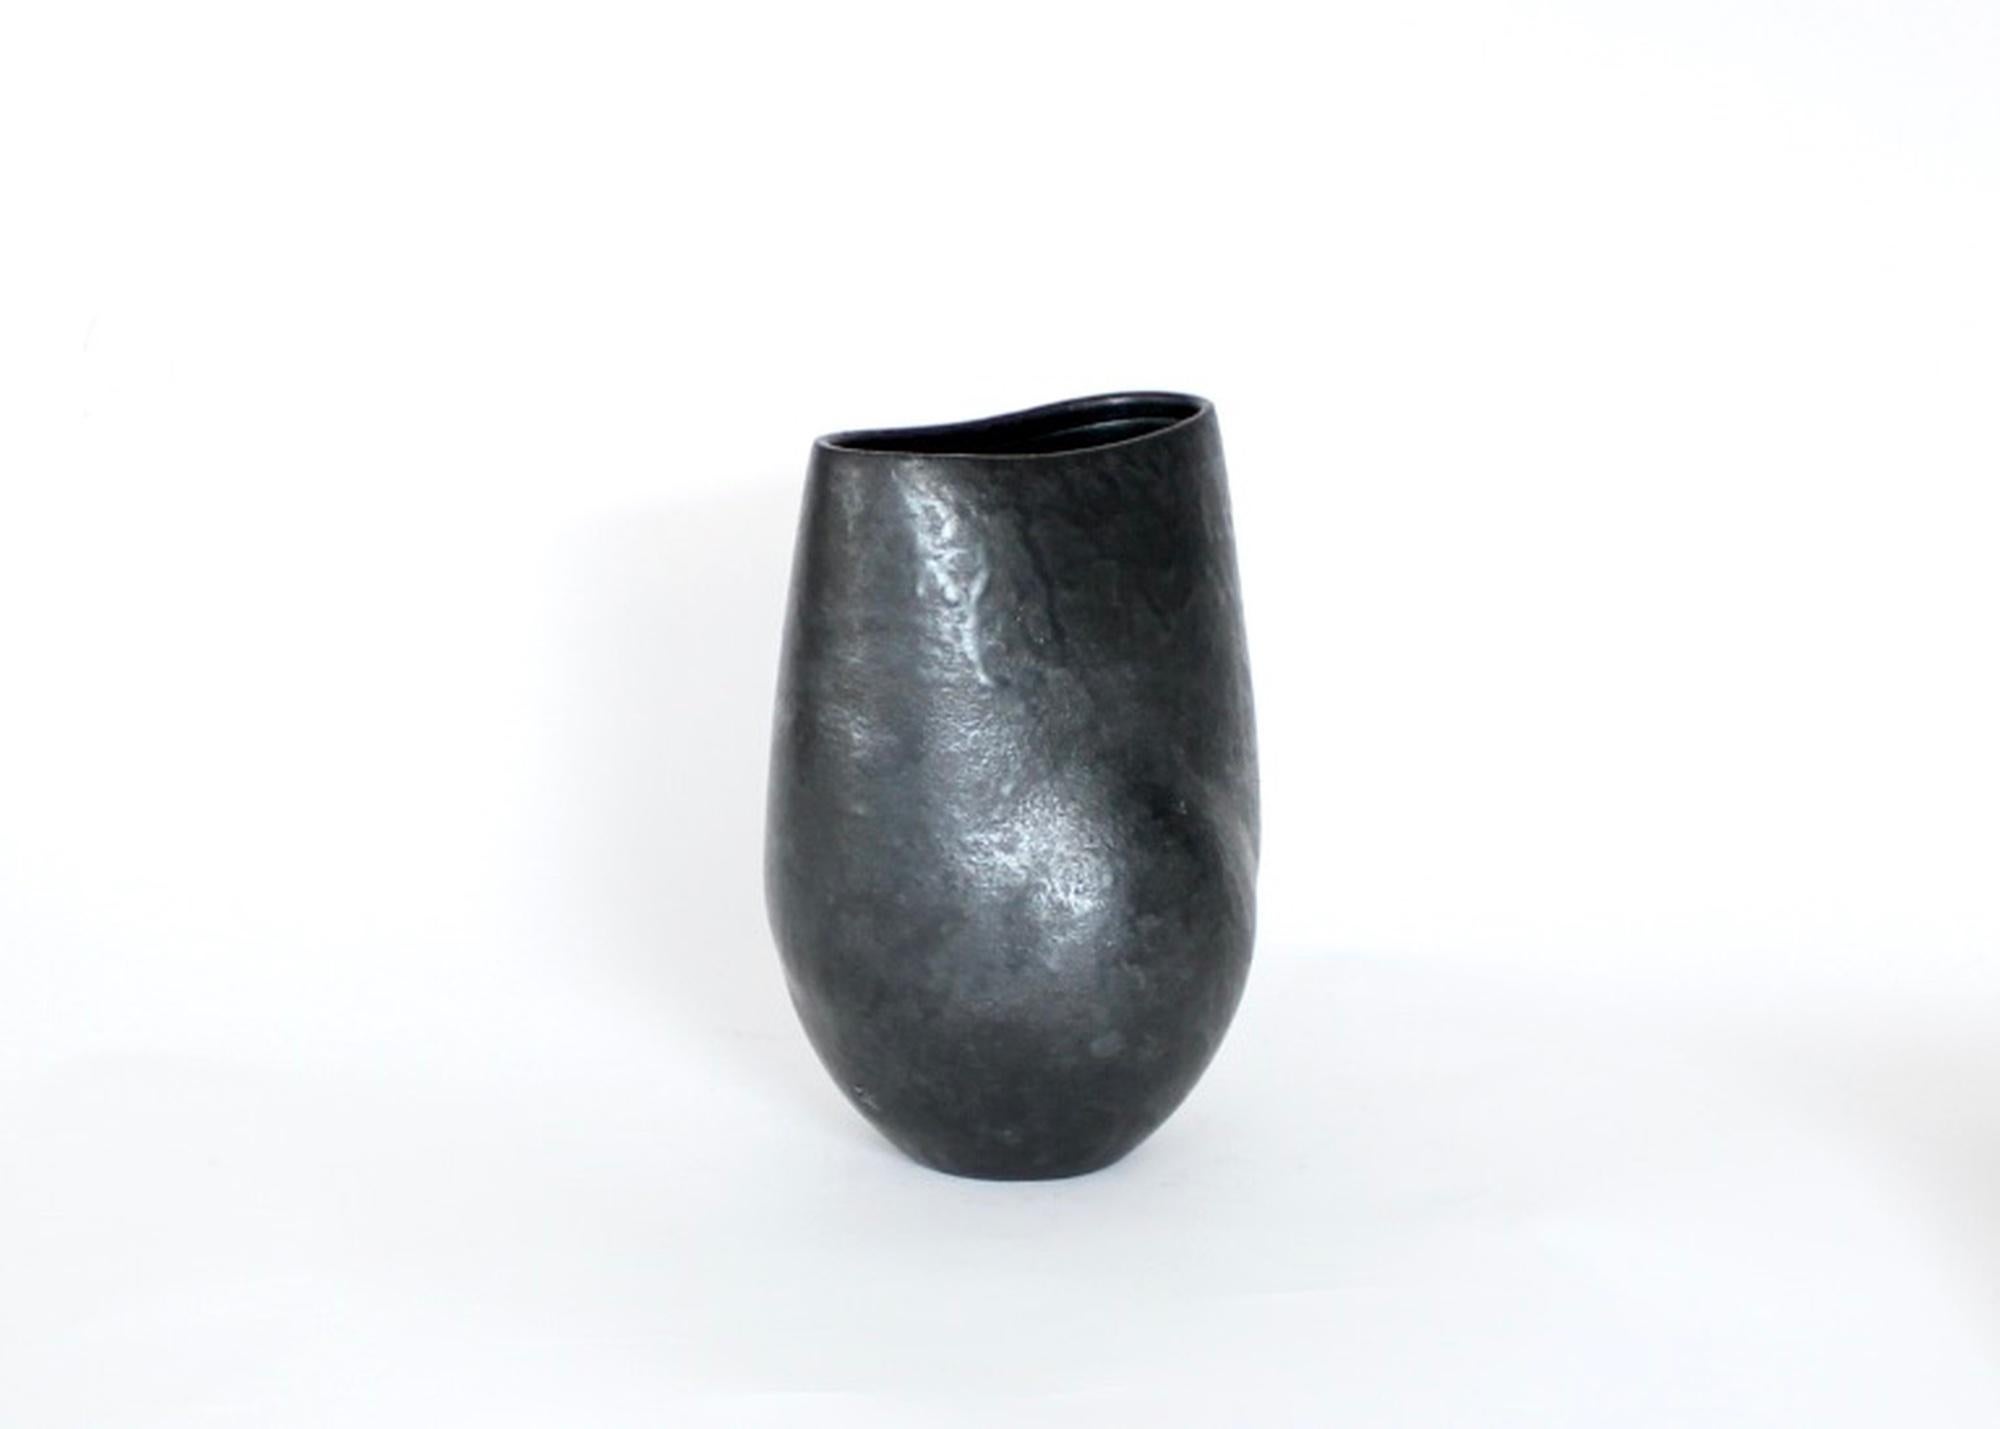 Vase bas en céramique de l'artiste français Andre Bloch. Bloch utilise une argile fortement chamottée et une glaçure d'un noir profond pour créer ses formes uniques. Circa 2010
